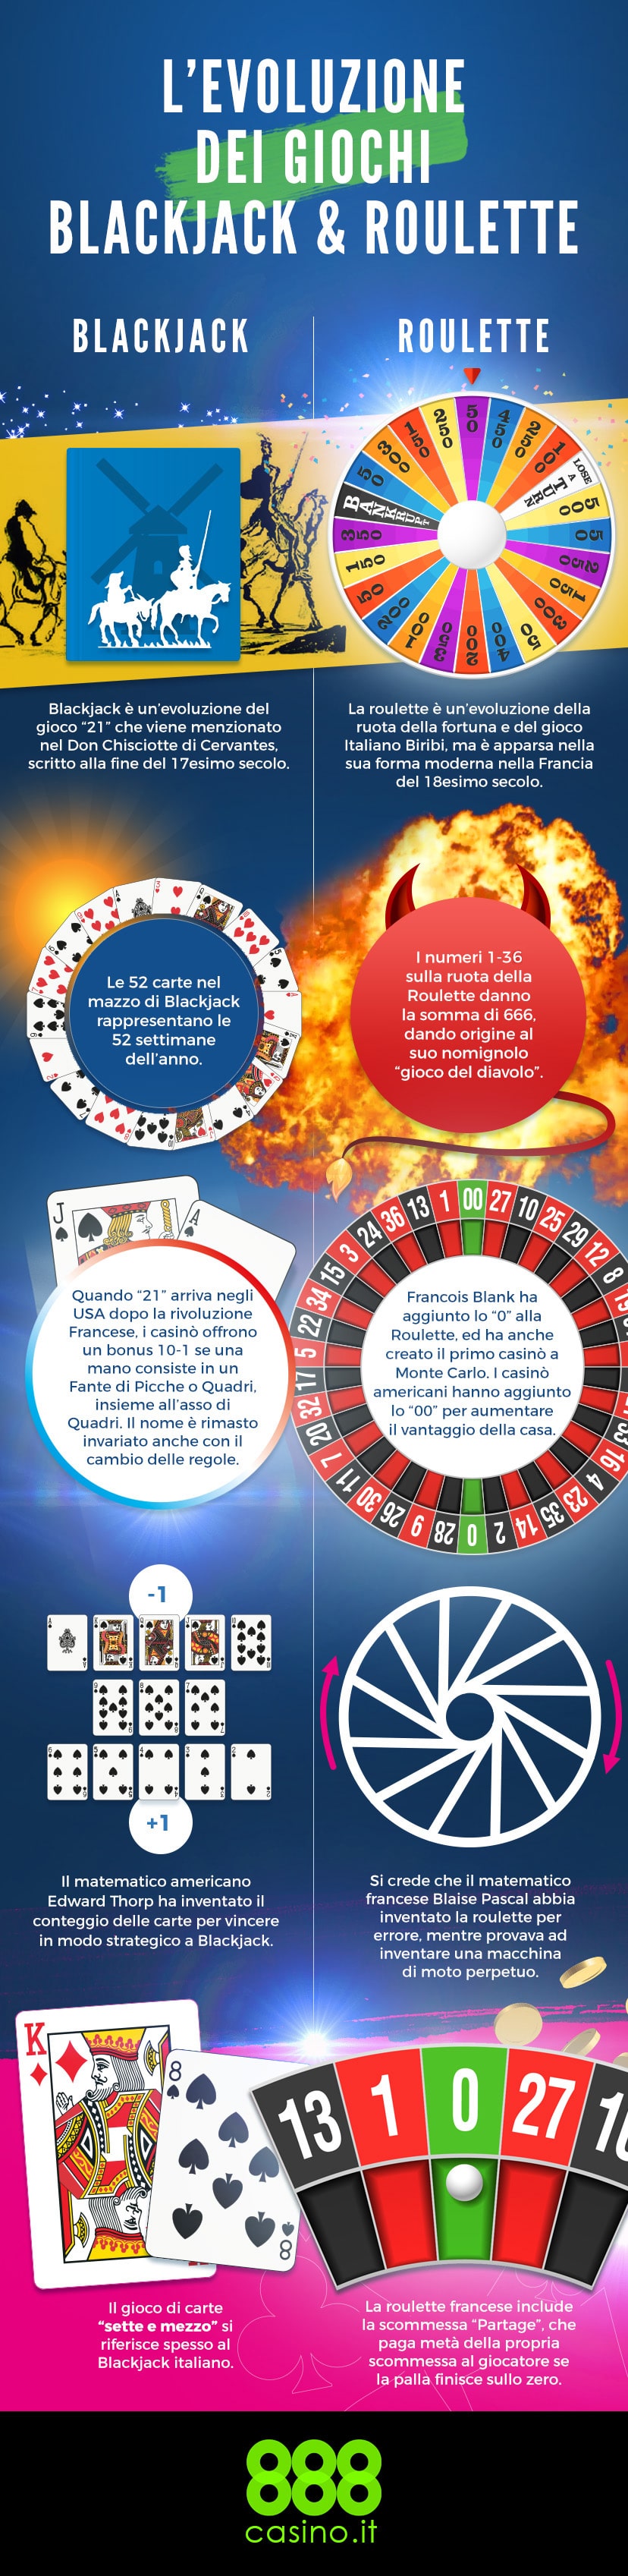 Blackjack e roulette, curiosità, segreti e evoluzione dei due giochi